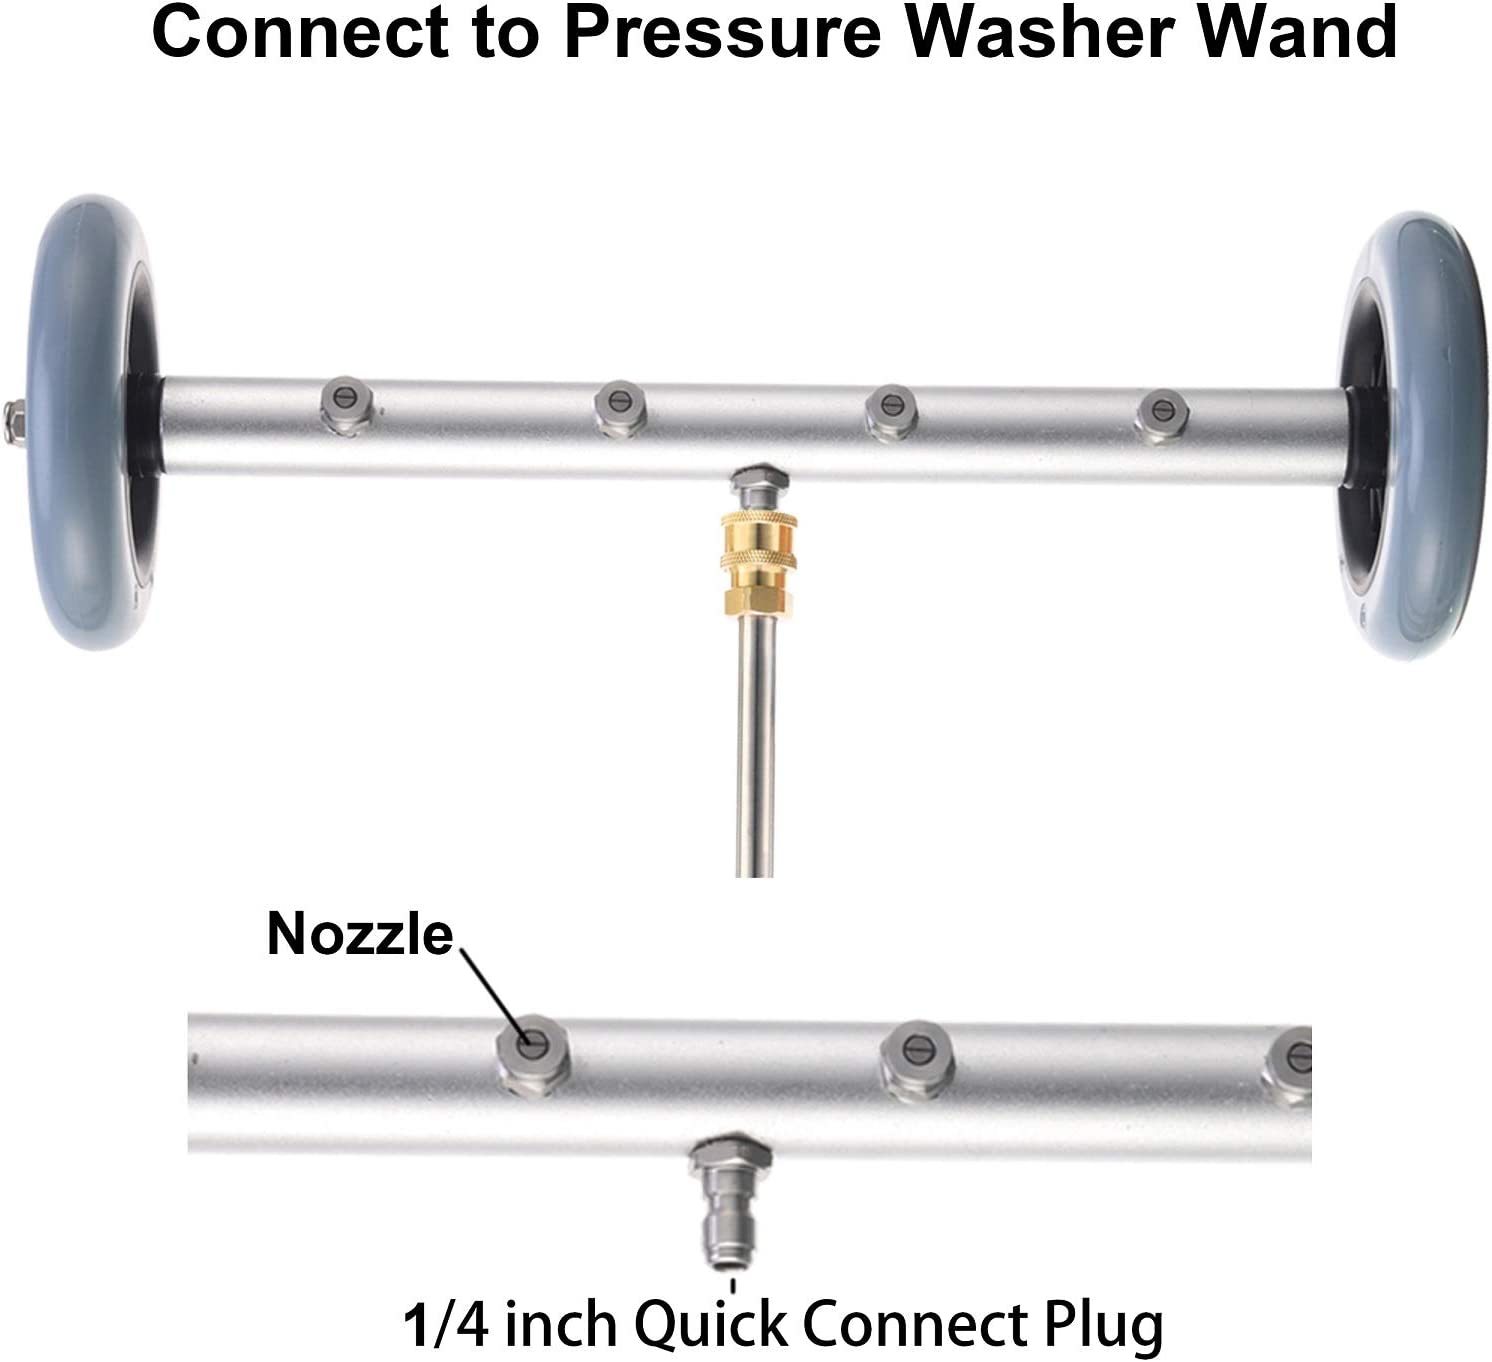 TUHUT 1/4 Rotary Wash Brush for Pressure Washers Pressure Washer Brush